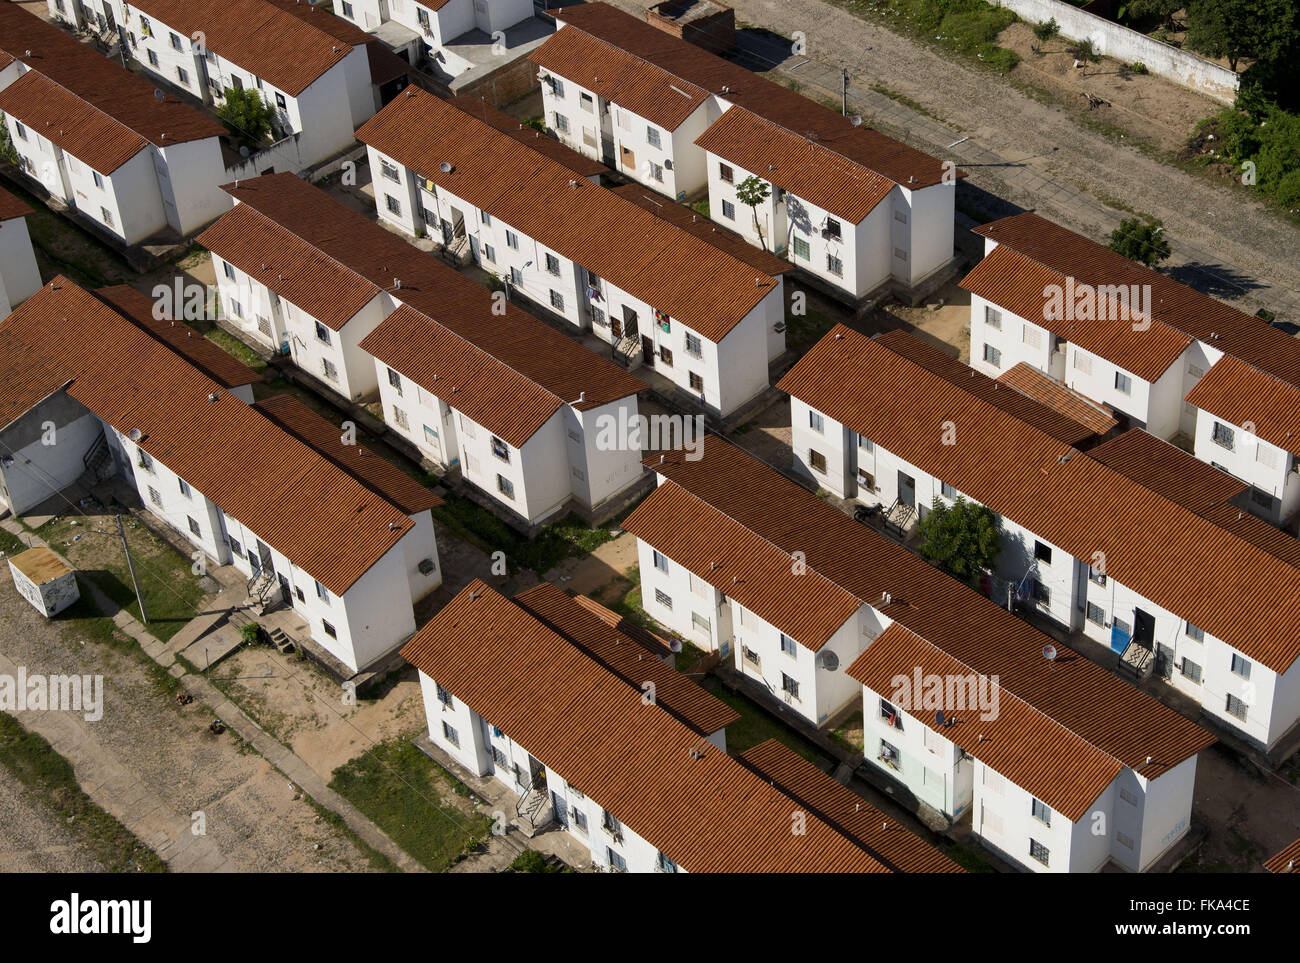 Desarrollos residenciales en Granja Lisboa - zona sur occidental de ??la Fortaleza Foto de stock